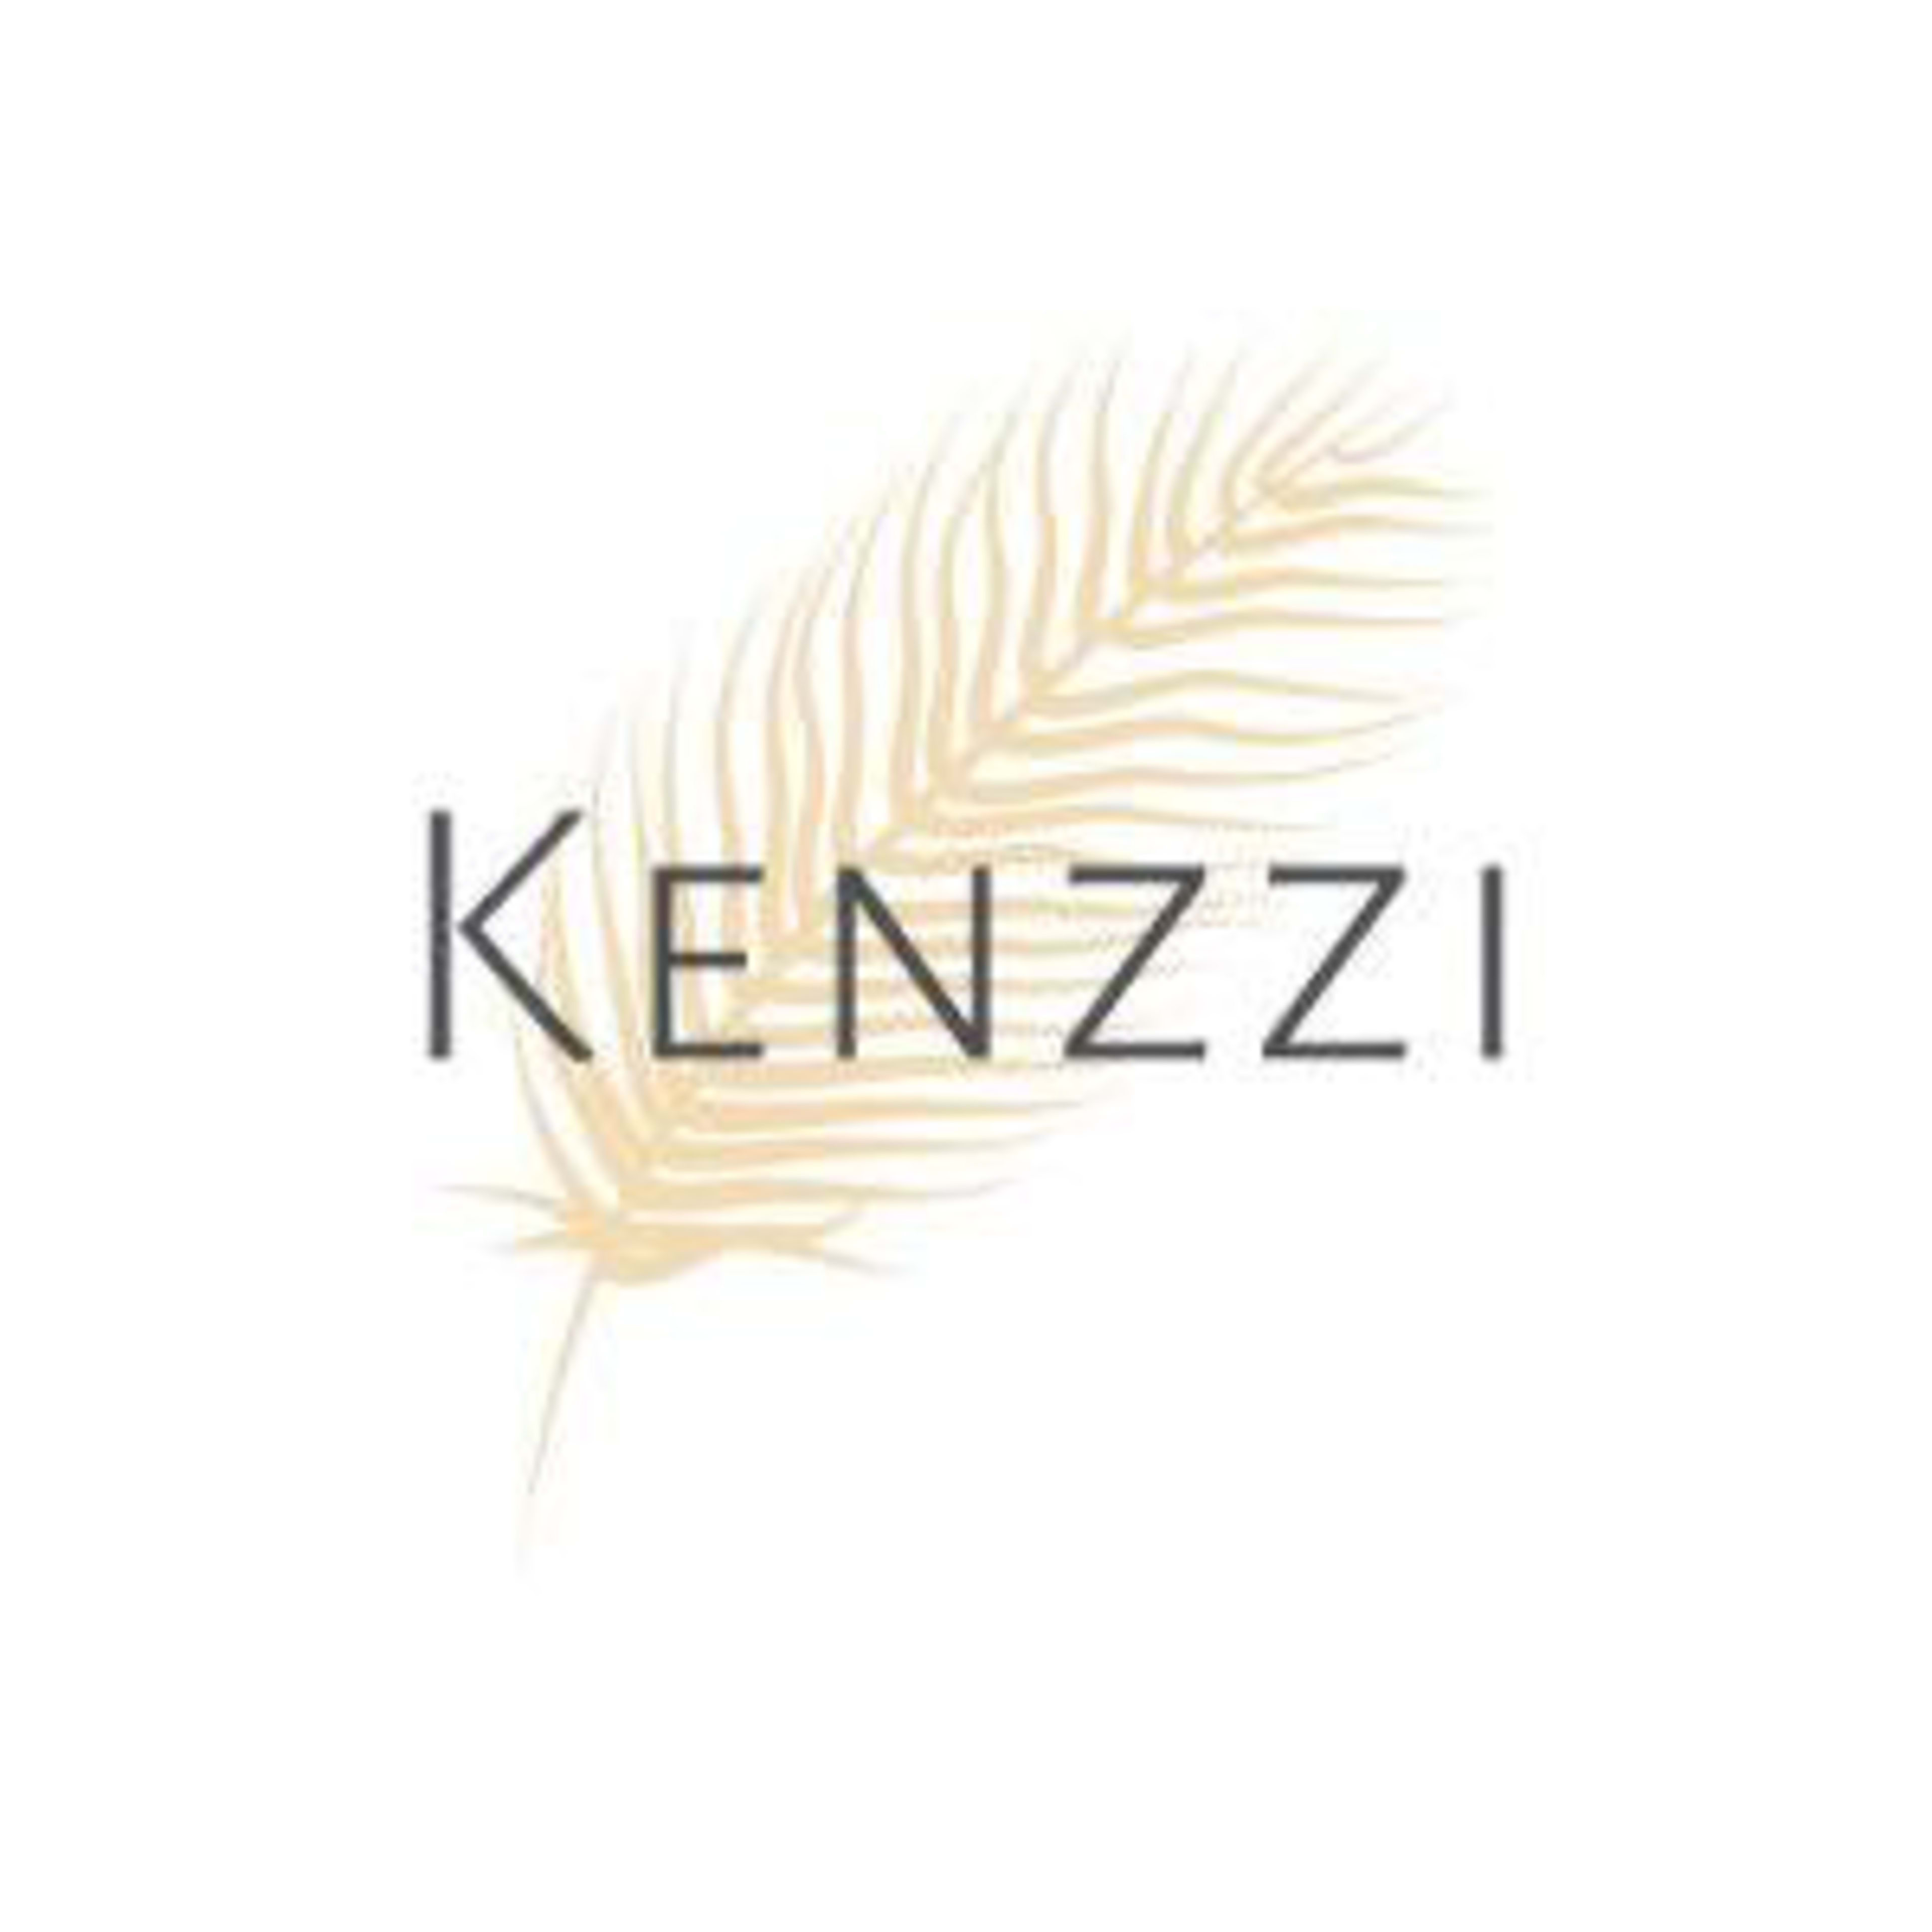 Kenzzi Code